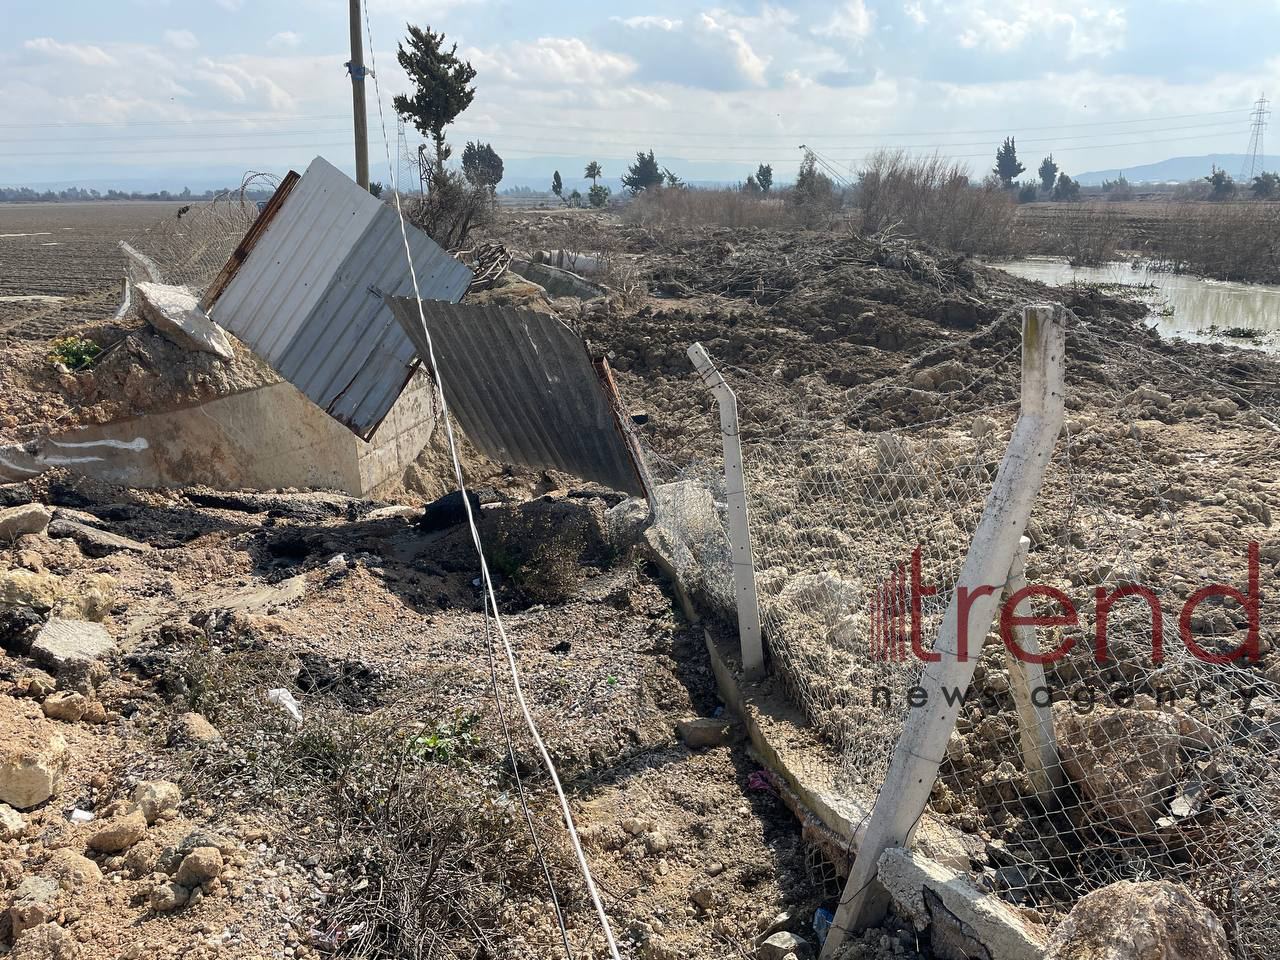 Последние кадры из зоны землетрясения в турецкой провинции Хатай (ФОТО/ВИДЕО)